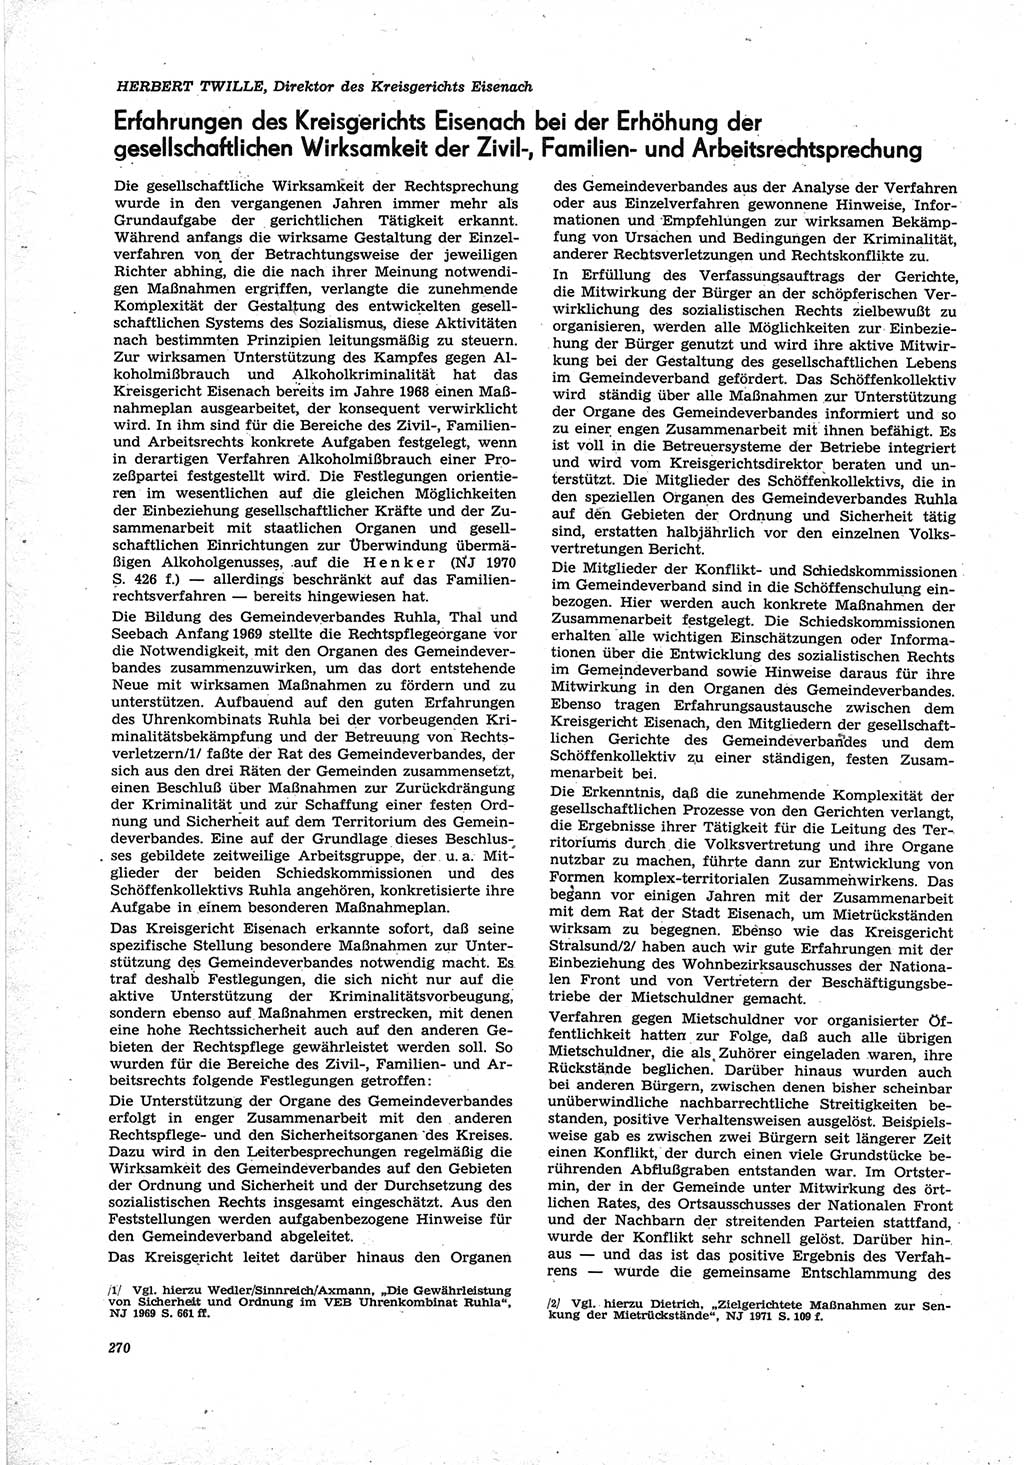 Neue Justiz (NJ), Zeitschrift für Recht und Rechtswissenschaft [Deutsche Demokratische Republik (DDR)], 25. Jahrgang 1971, Seite 270 (NJ DDR 1971, S. 270)